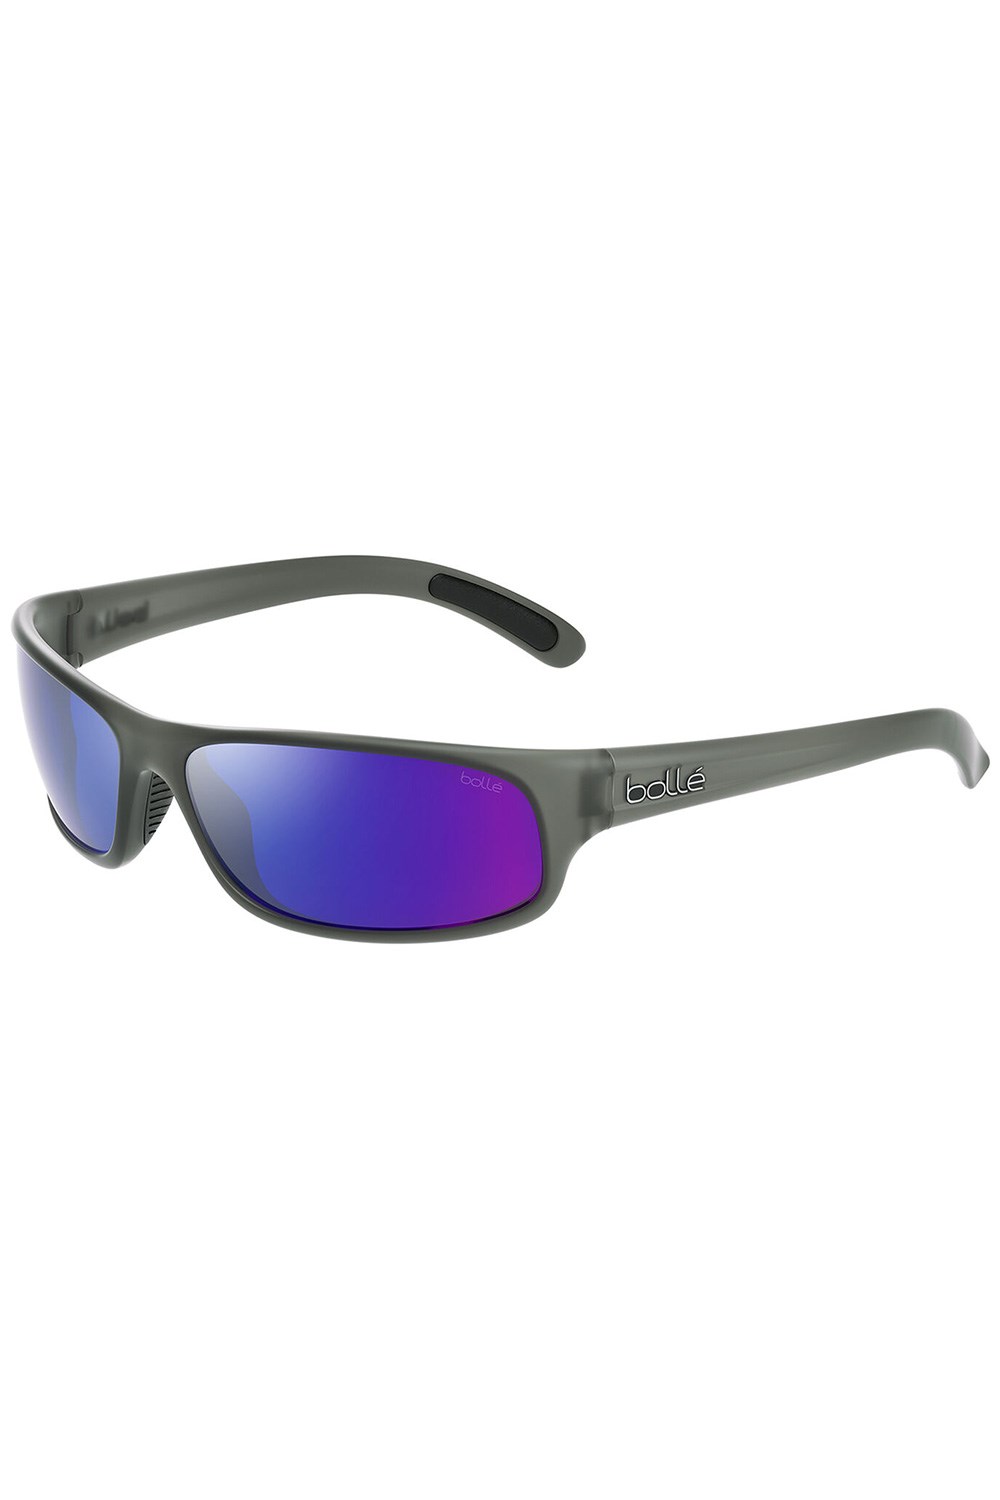 Anaconda Unisex Sunglasses -